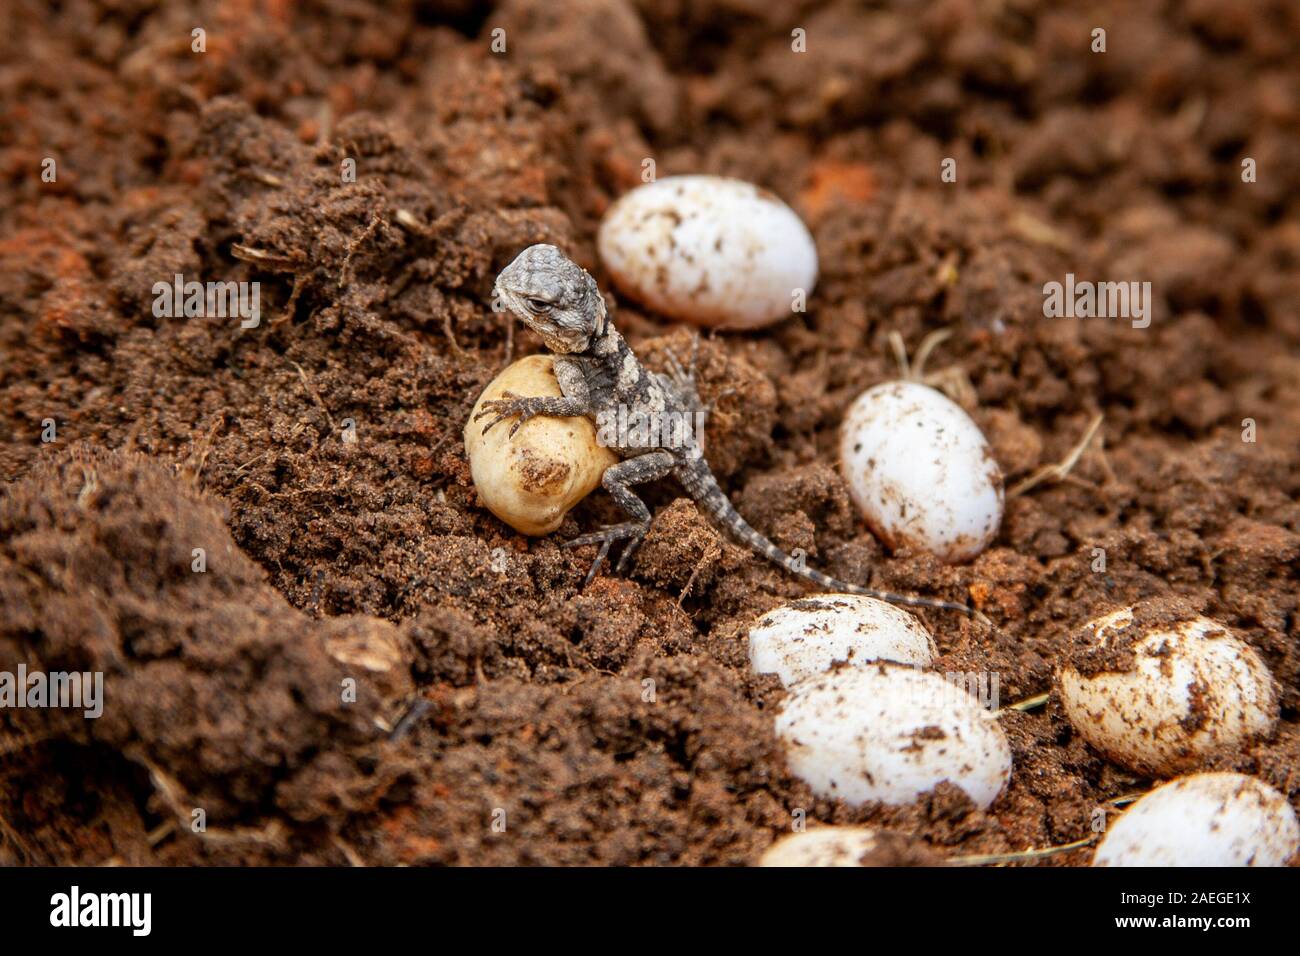 Roughtail rock Laudakia stellio (agama) avec des oeufs dans son nid, photographié en Israël Banque D'Images